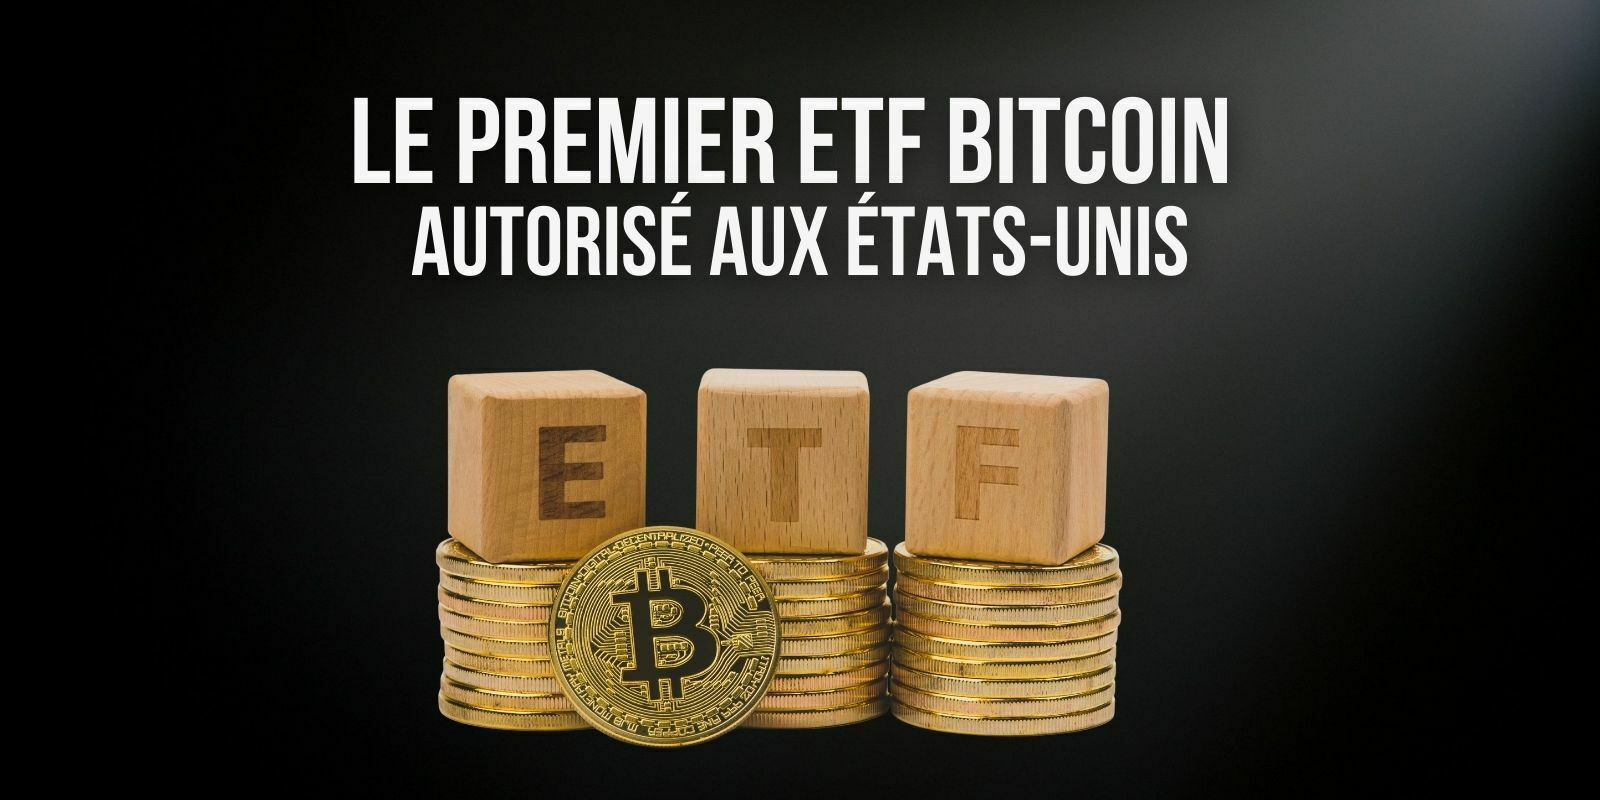 Après des années d’attente, le premier ETF Bitcoin (BTC) a été autorisé aux États-Unis